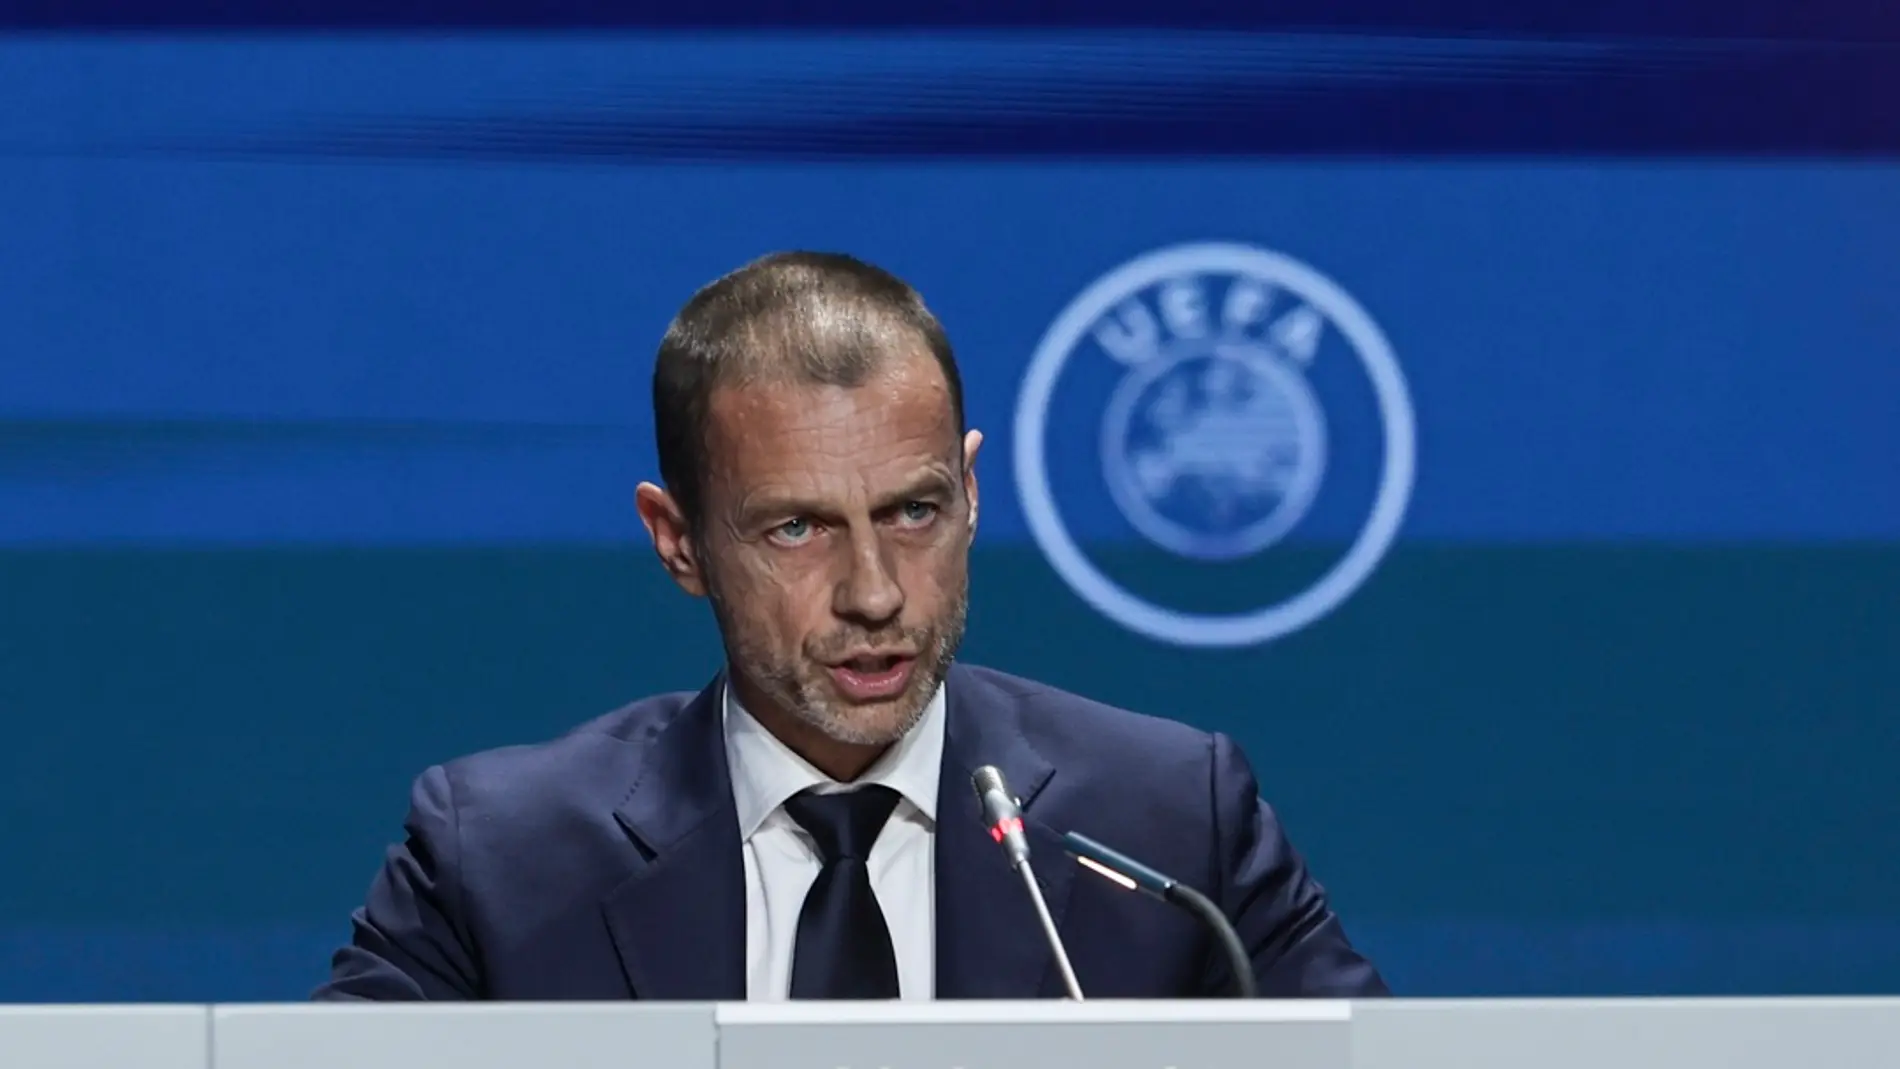 El president de la UEFA Aleksander Ceferin